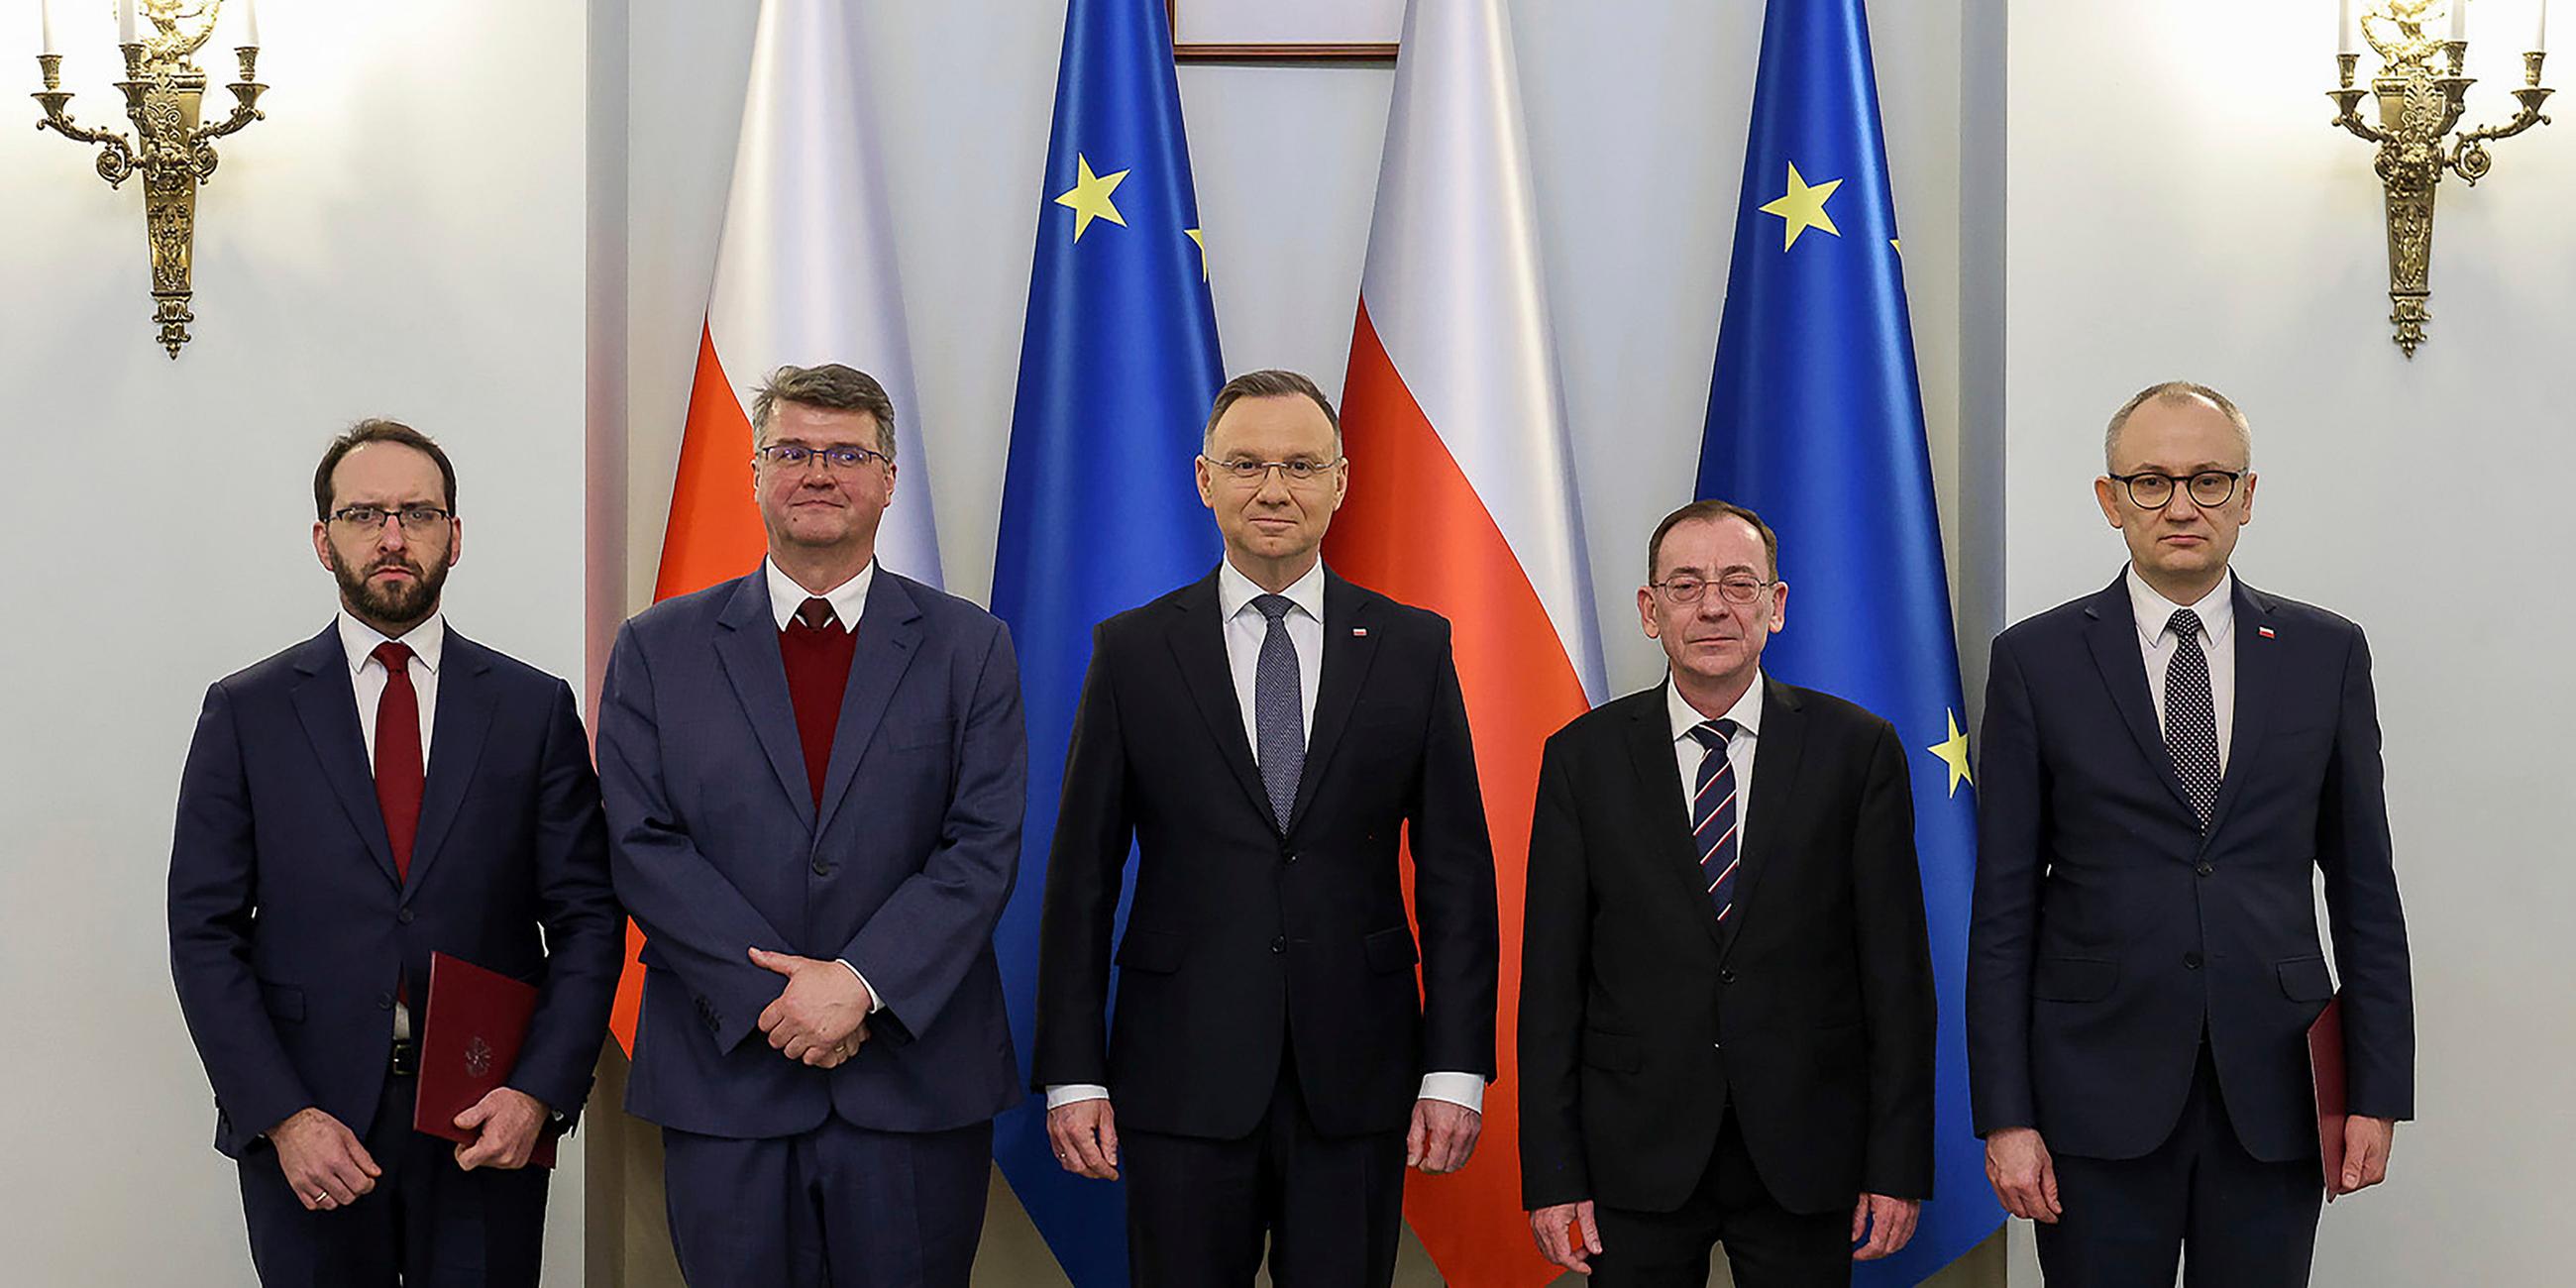 Polens Präsident Dua steht neben Zaryn,  Wasik, Kaminski und Probozy vor Polen und EU-Flaggen im Präsidentenpalast.